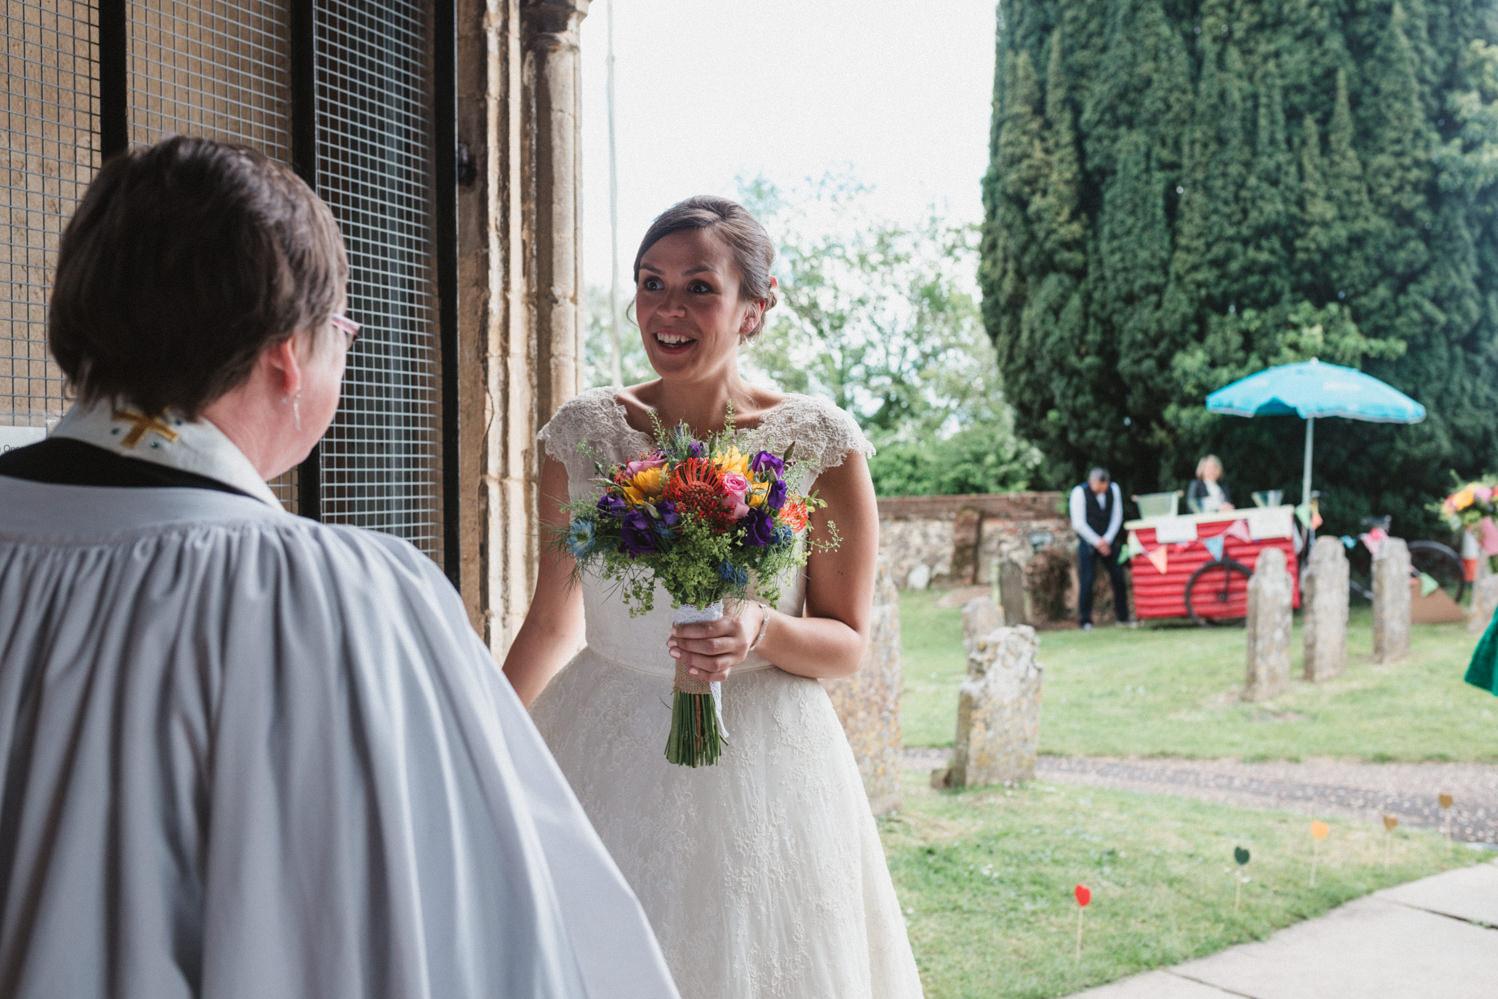 Norfolk bride greets vicar before wedding ceremony